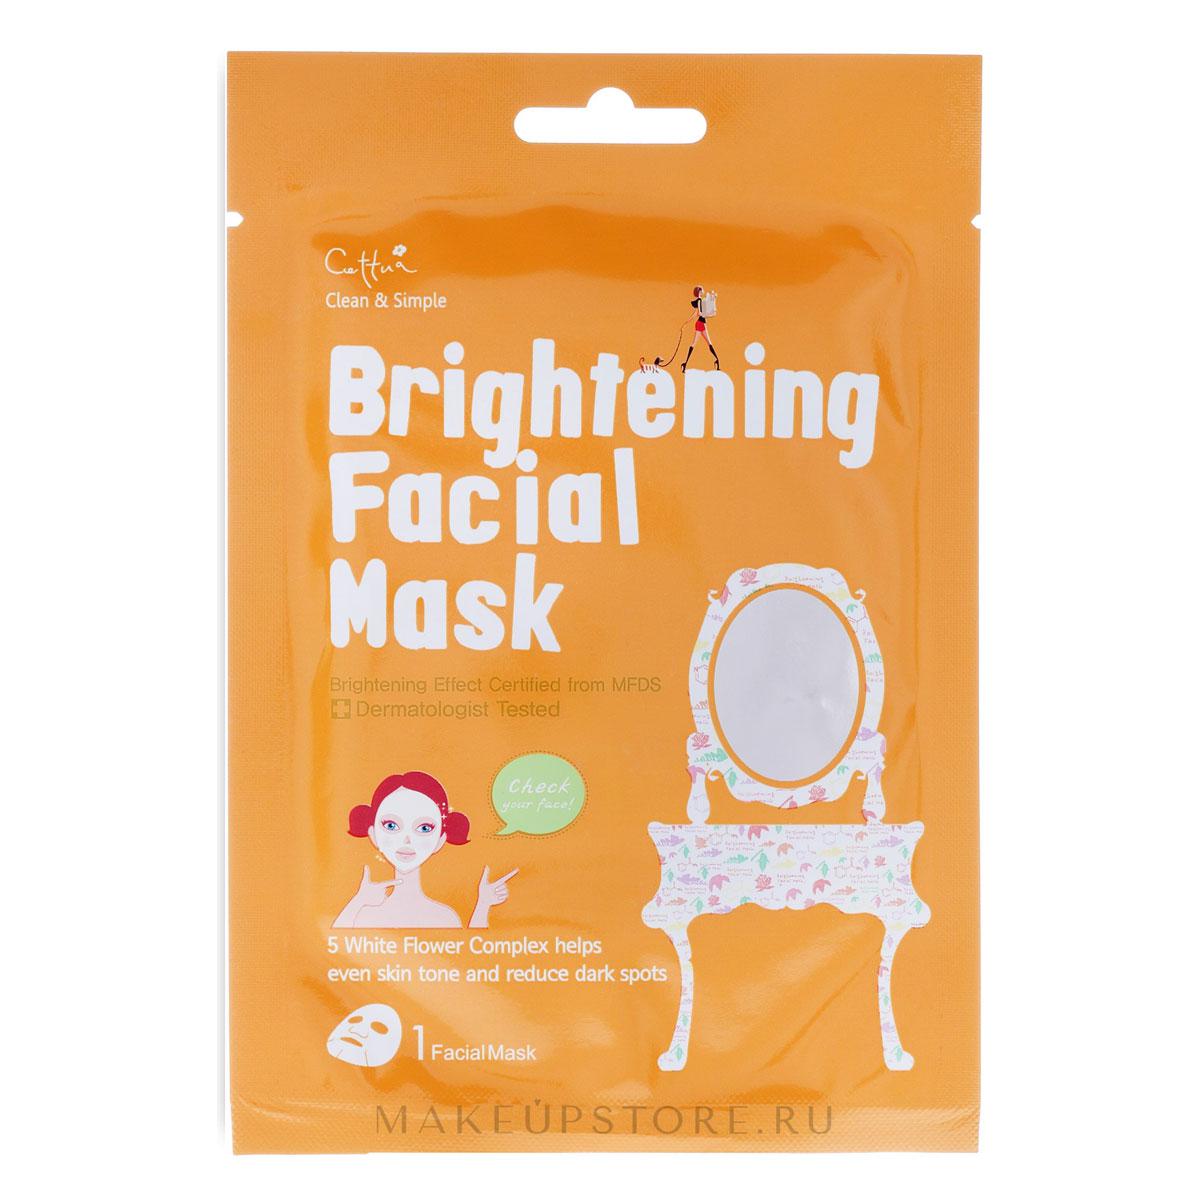 ماسک روشن کننده کره ای - brightening face mask